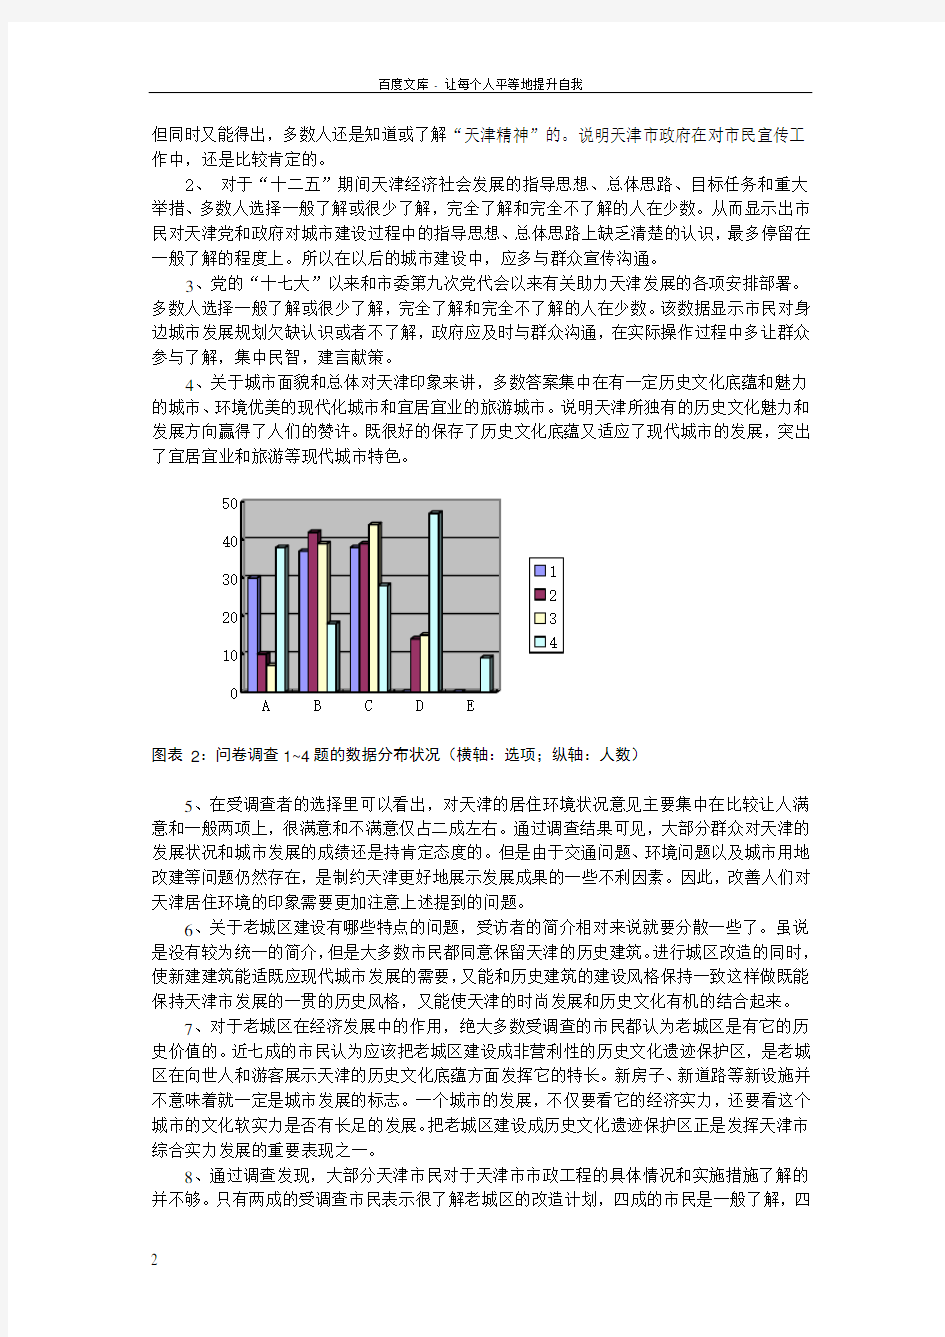 关于天津改革开放以来发展变化情况的调研报告